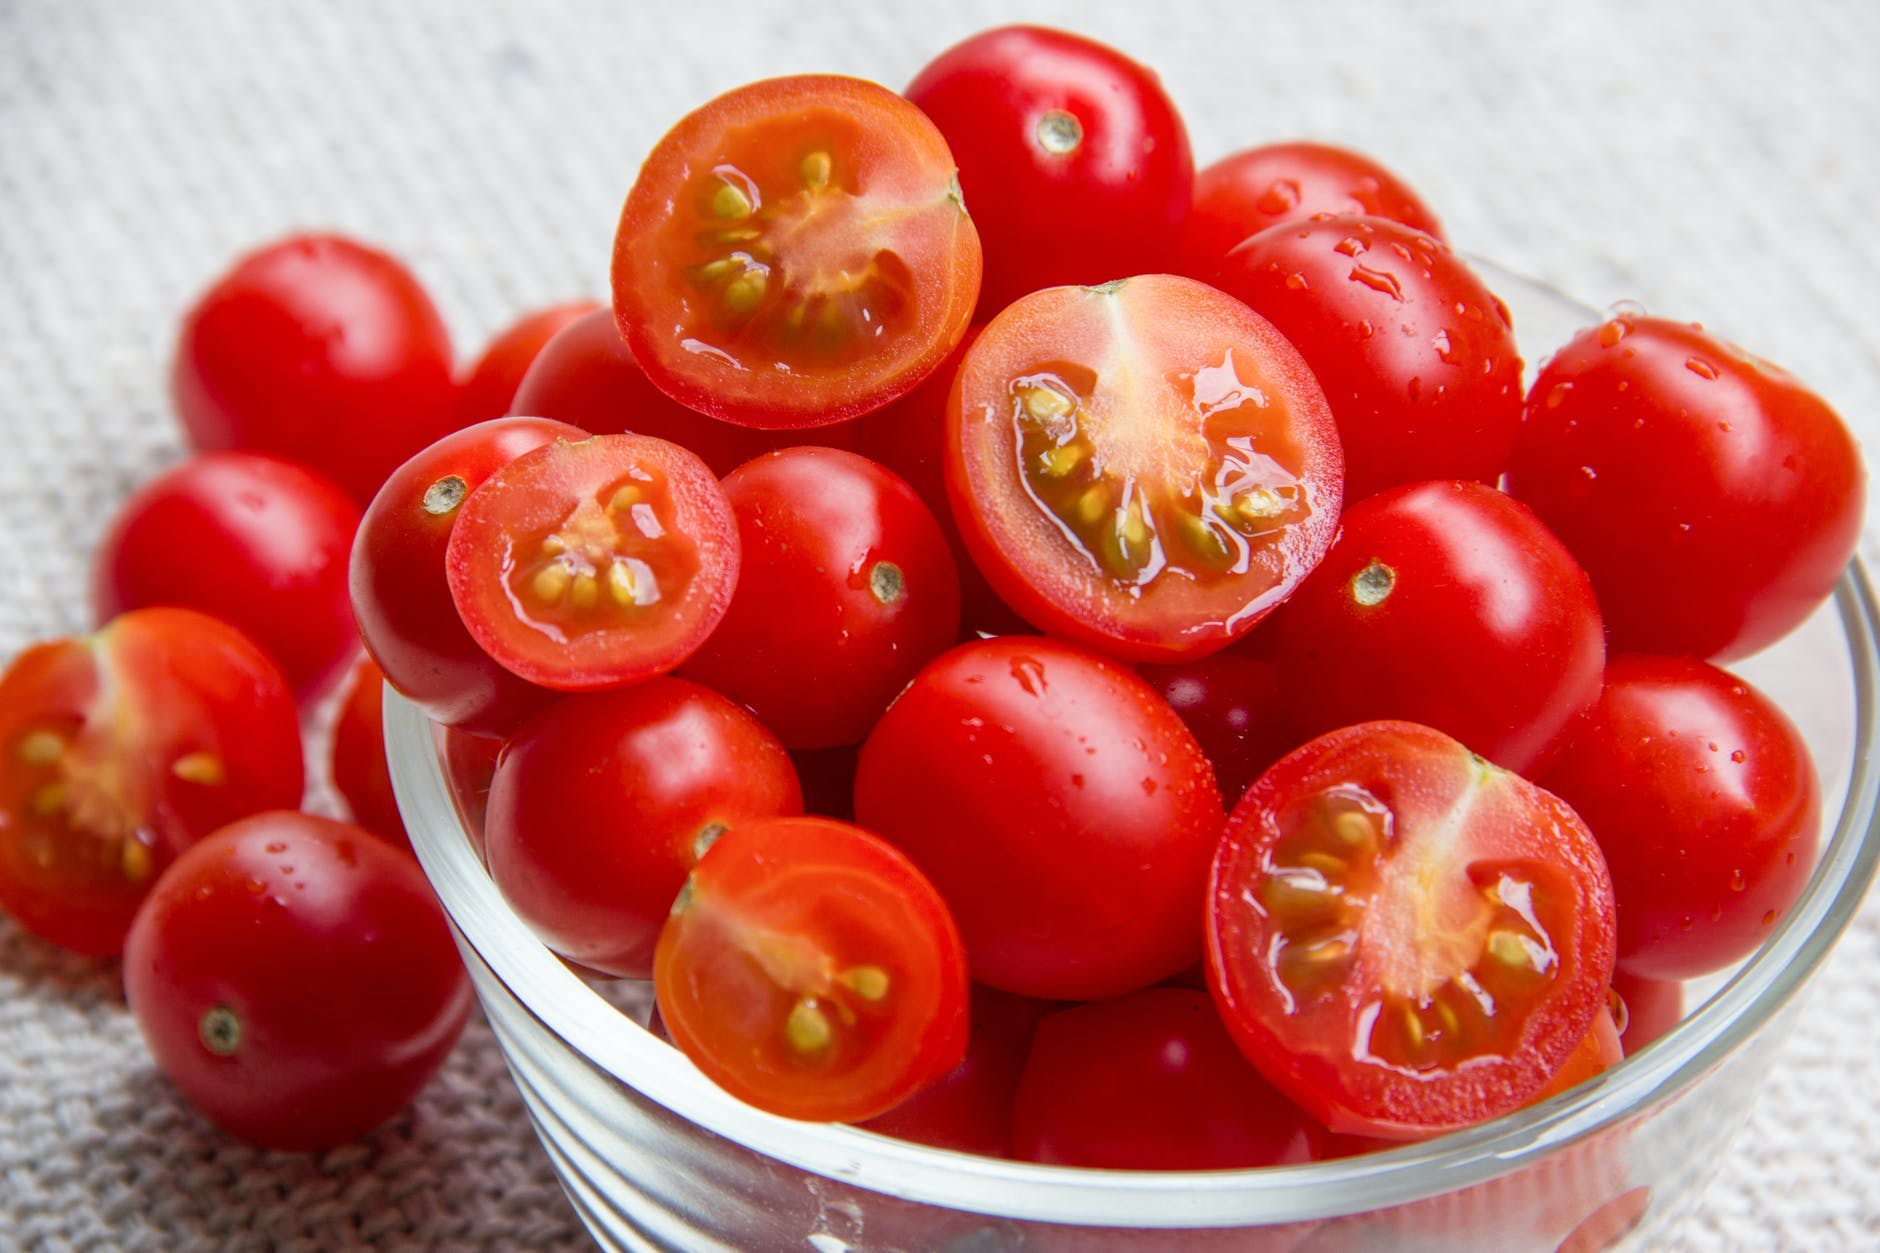 Sabia que tomates não devem ser guardados na geladeira? Confira o motivo!